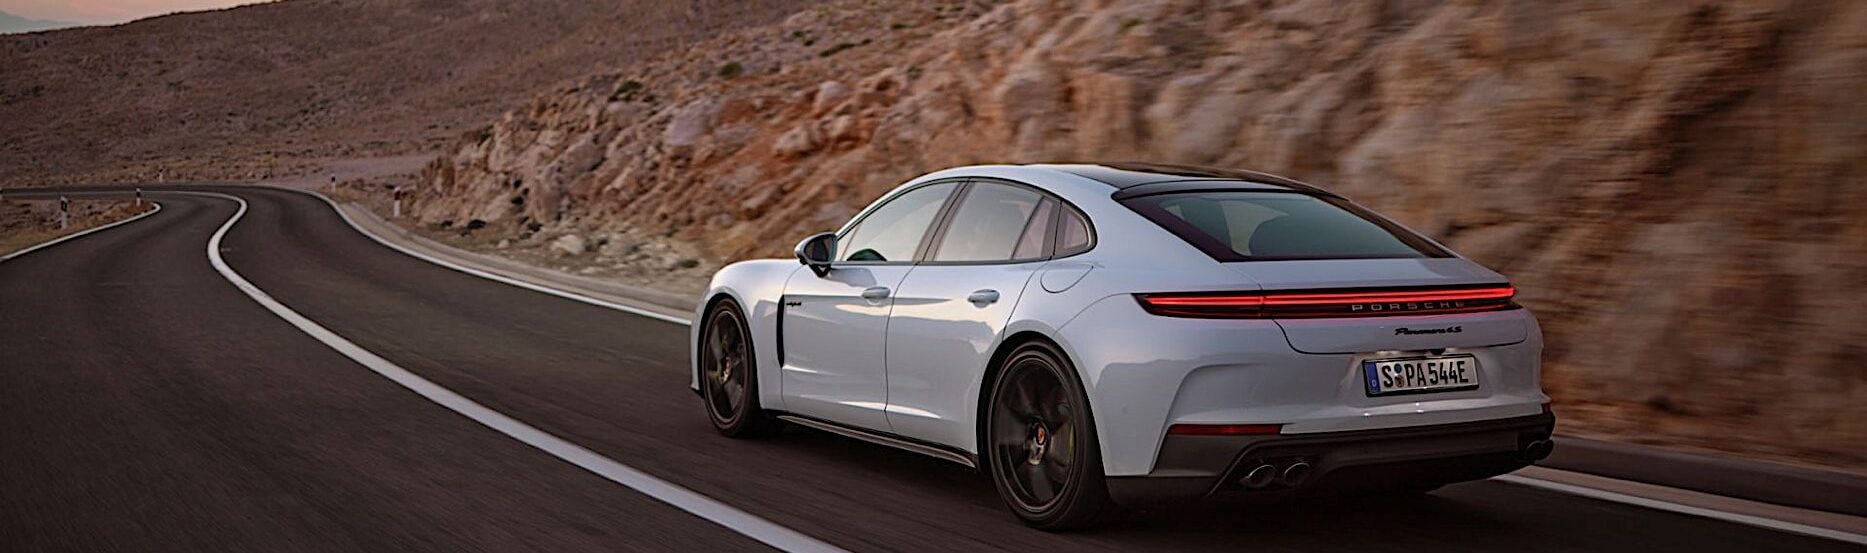 Porsche удваивает предложение подключаемых гибридов Panamera, теперь на столе еще две версии